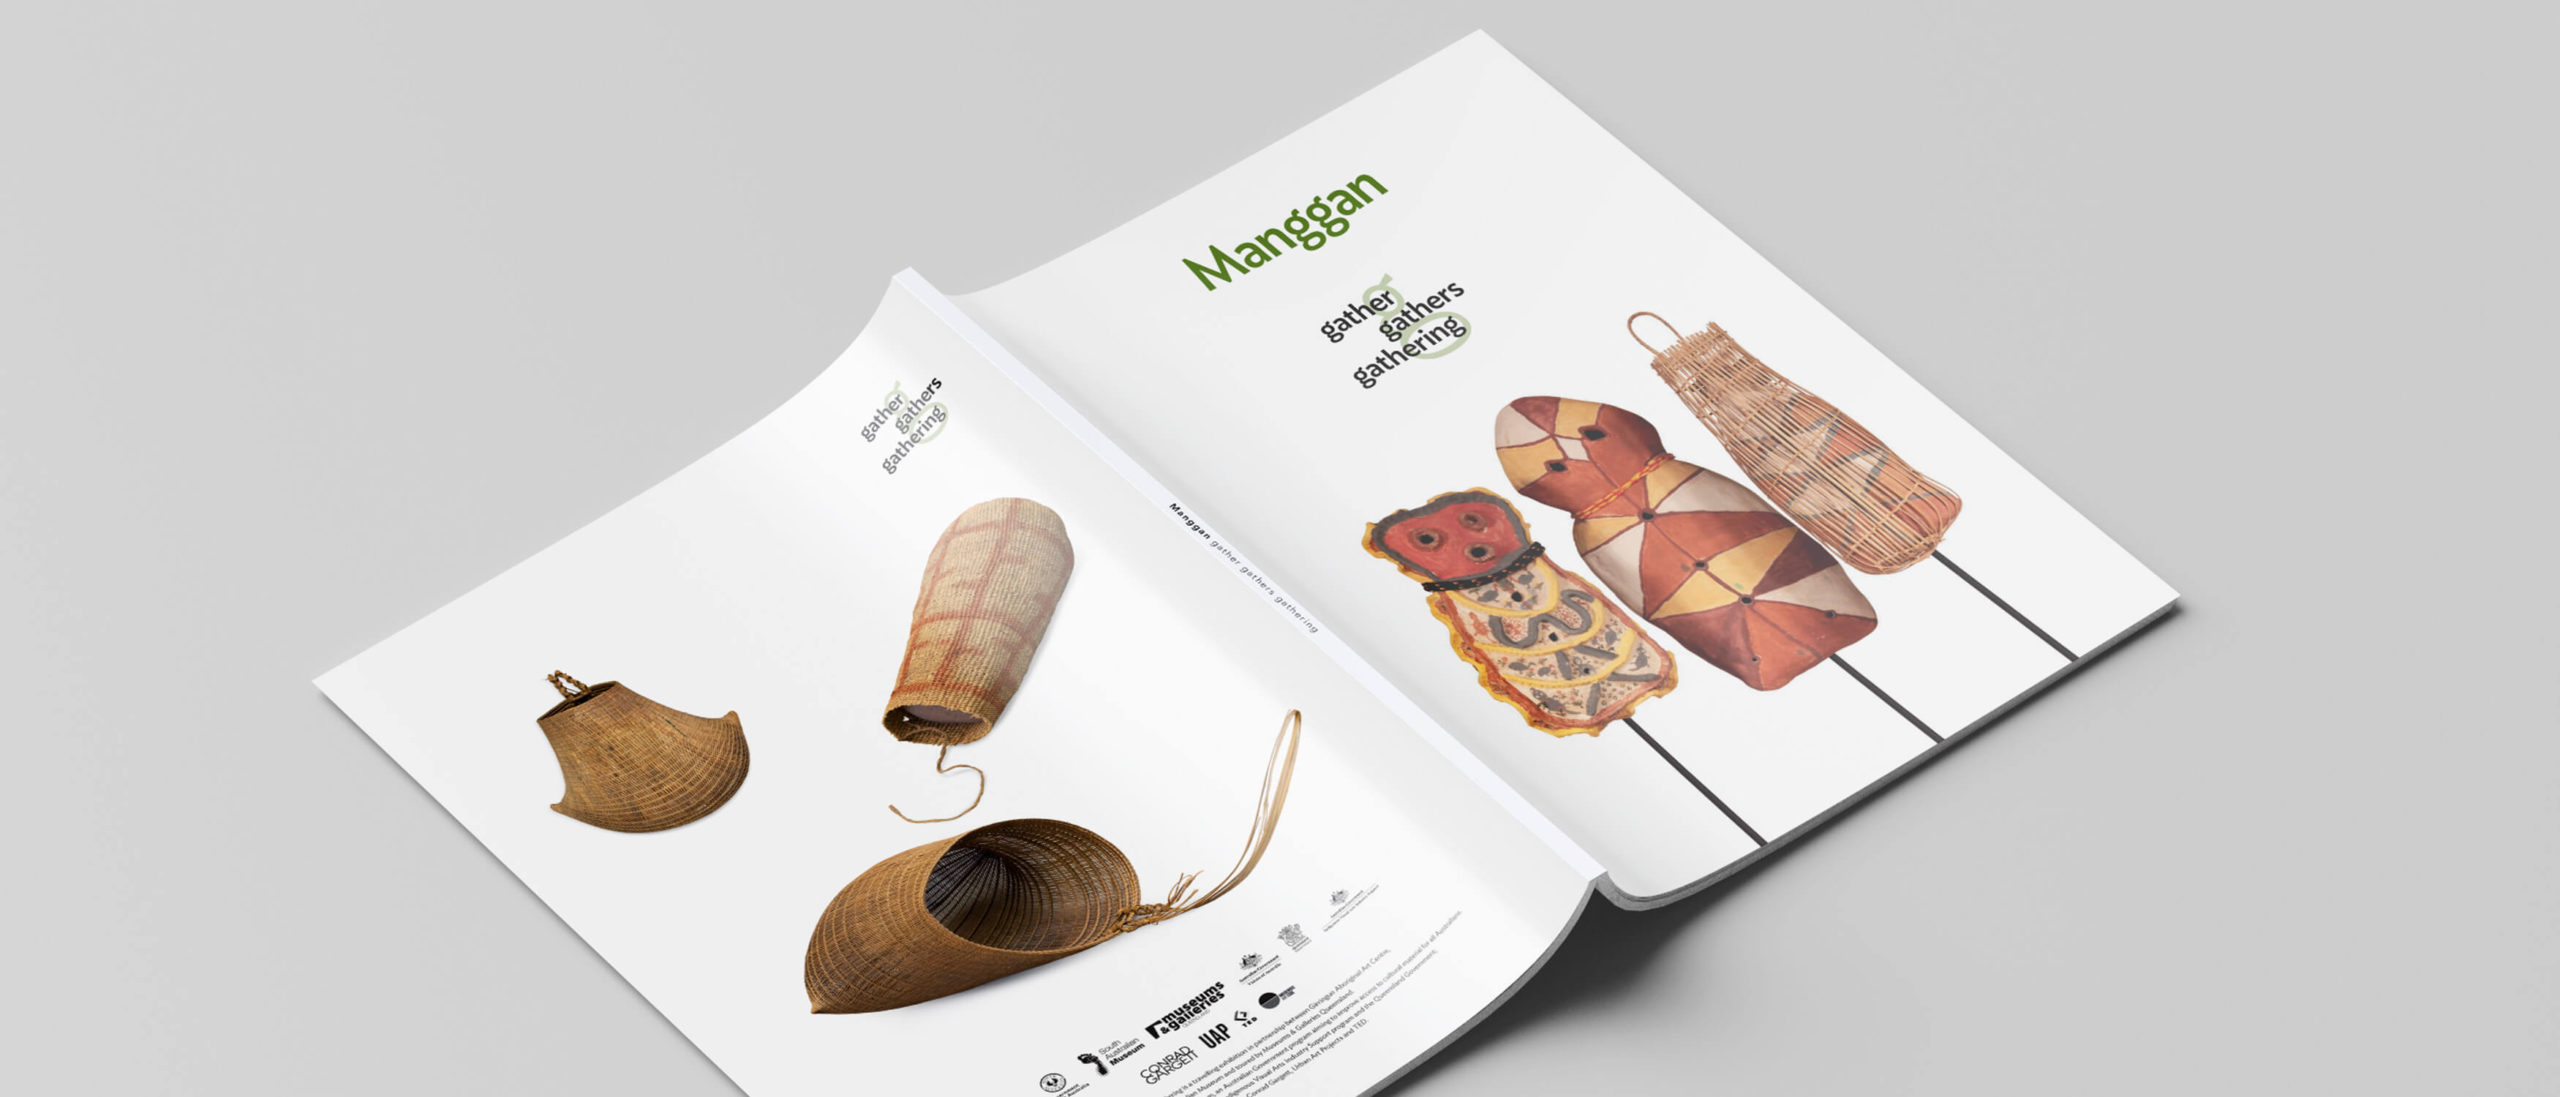 Manggan exhibition brochure cover